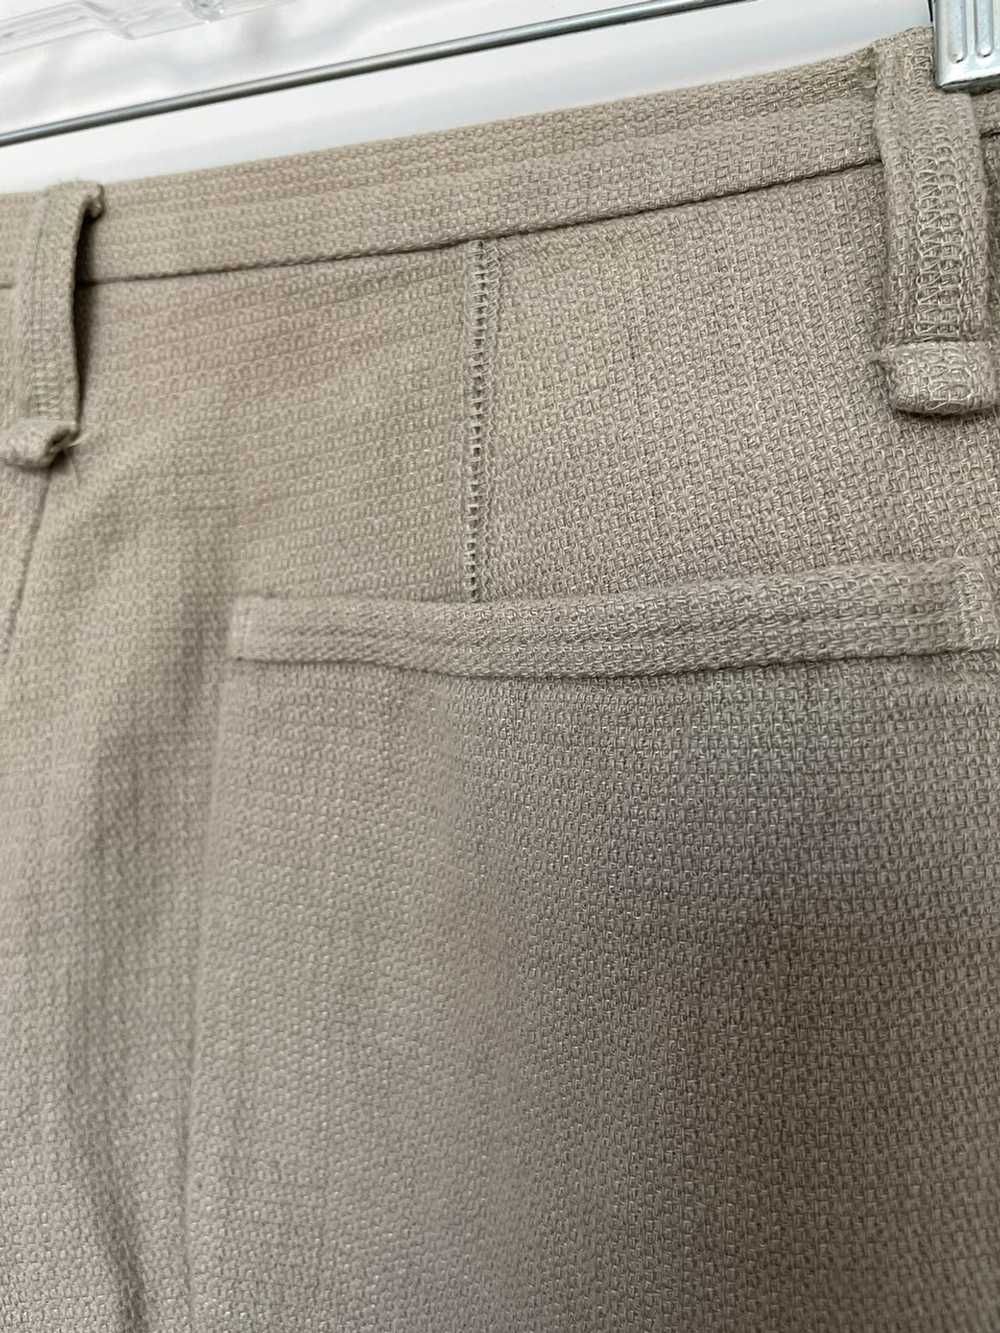 Yohji Yamamoto Yohji Y’s Linen Pants - image 5